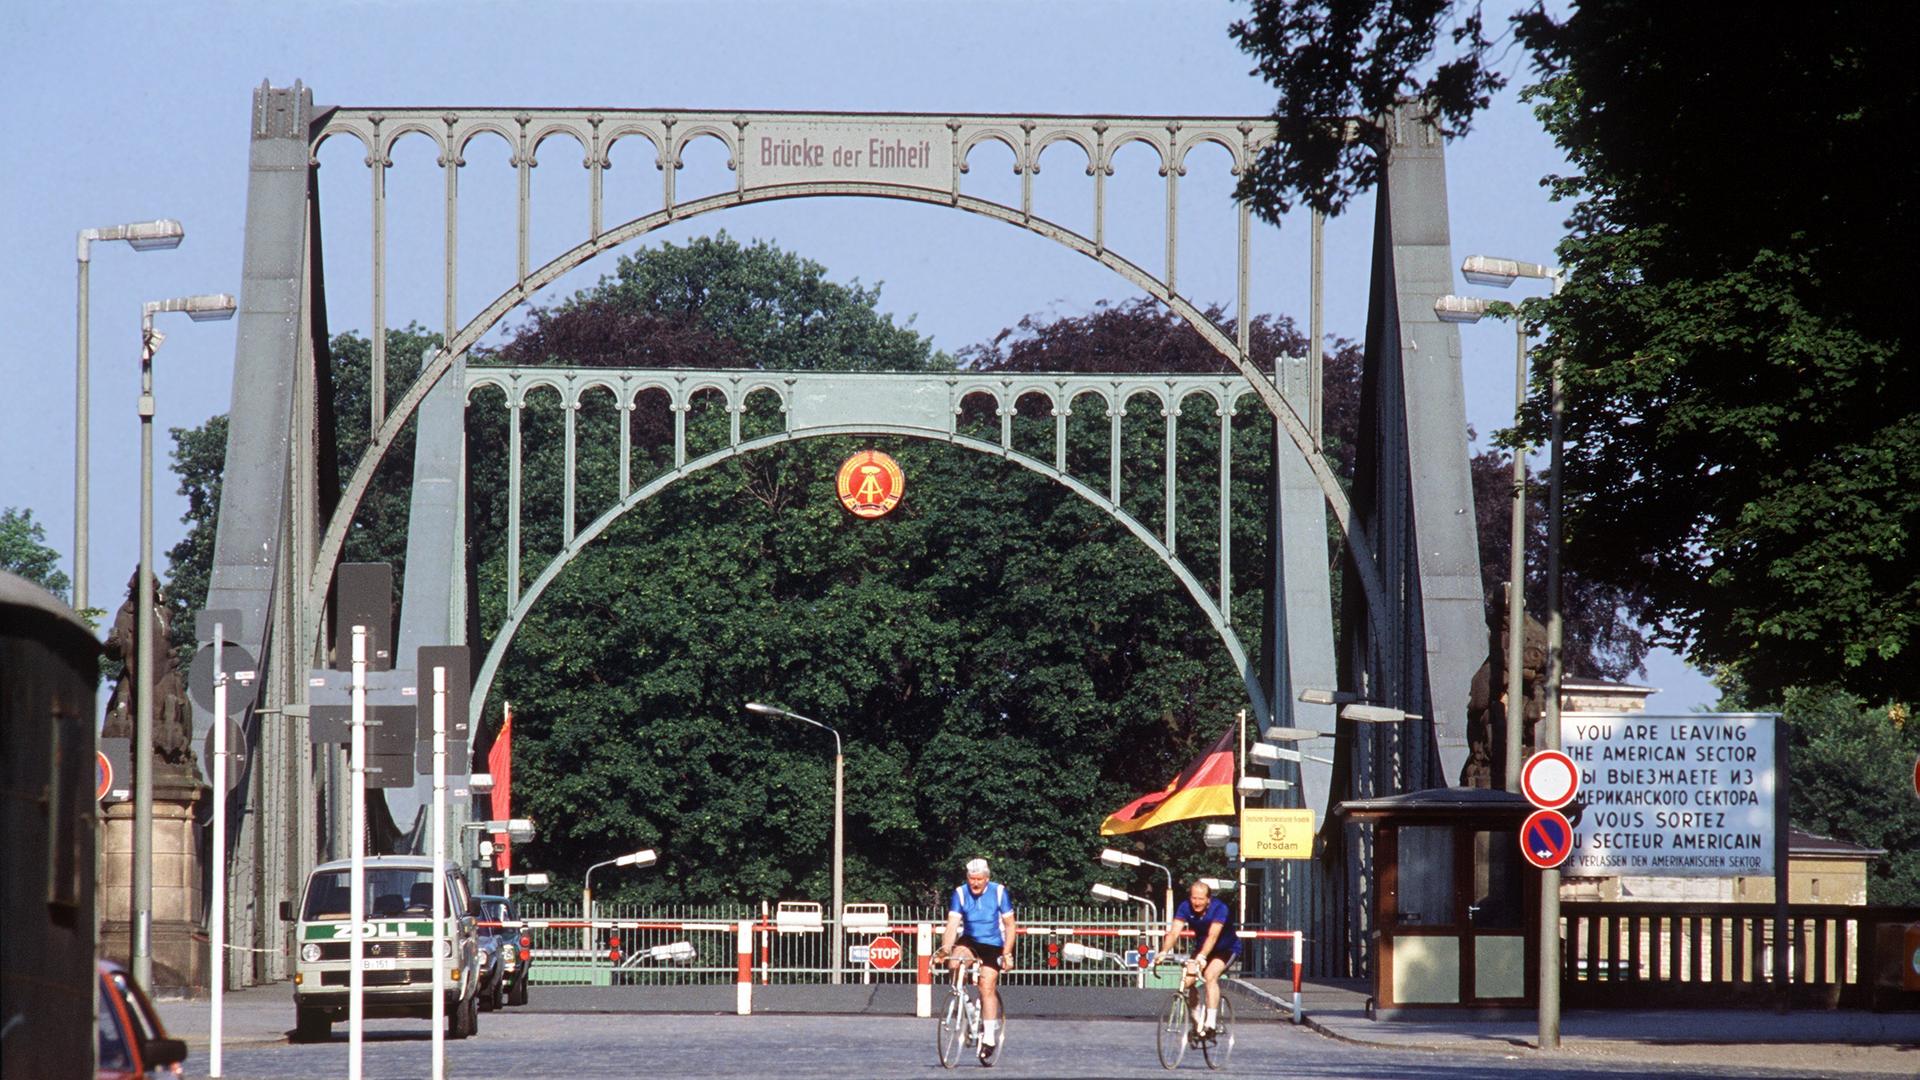 Die Glienicker Brücke an einem lichten Tag mit Fahrradfahrern. Im Hintergrund sind Bäume zu sehen.